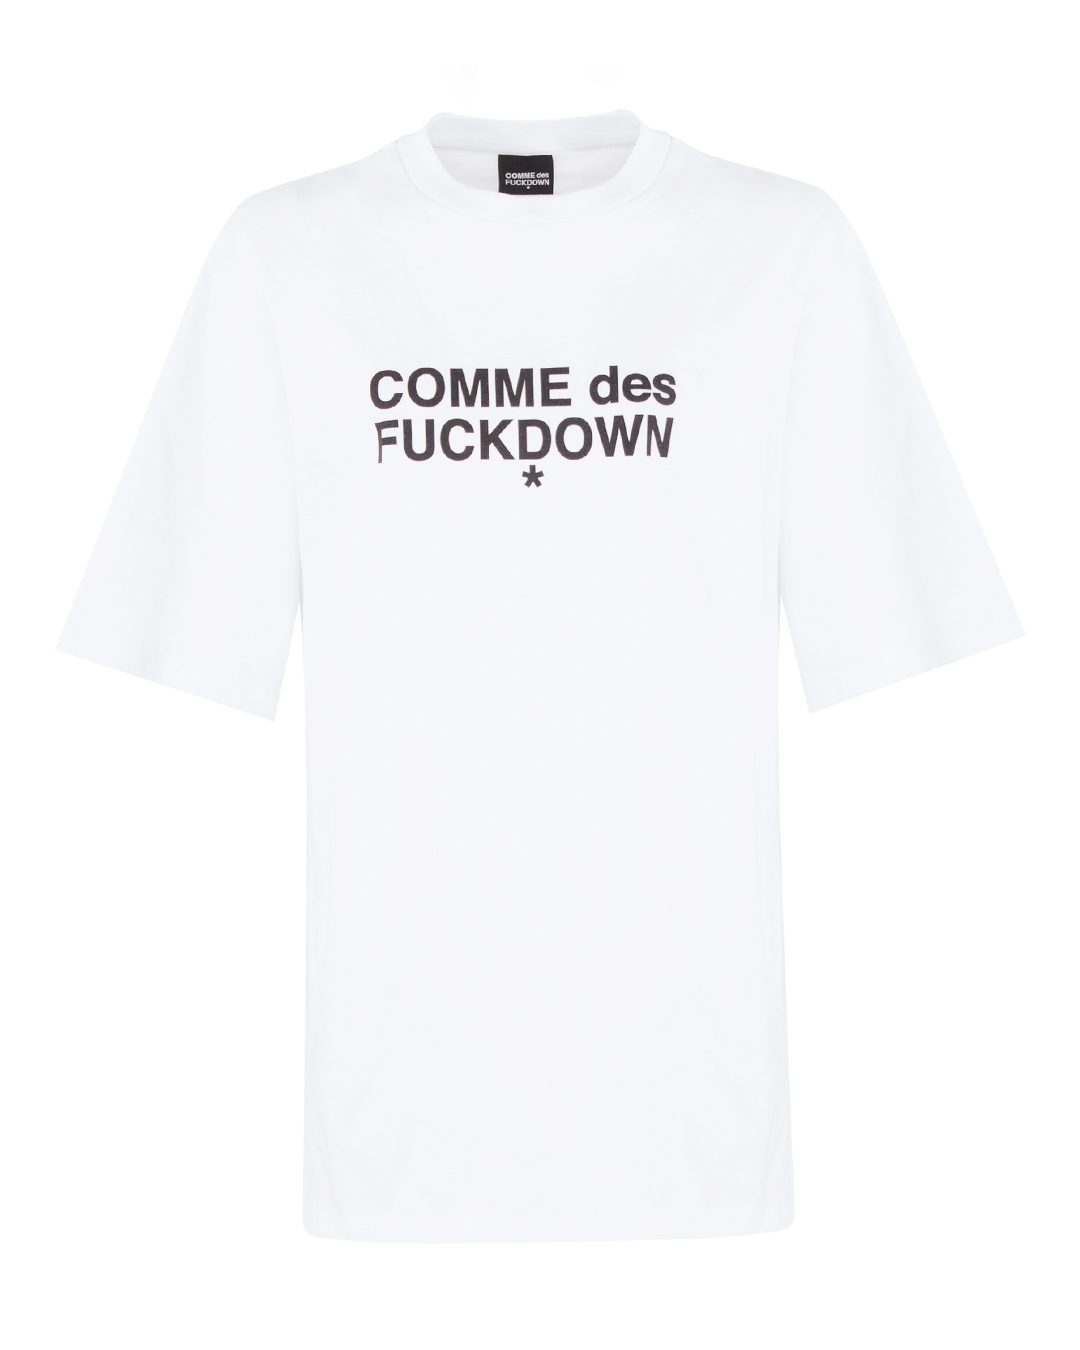 платье- футболка COMME des FUCKDOWN